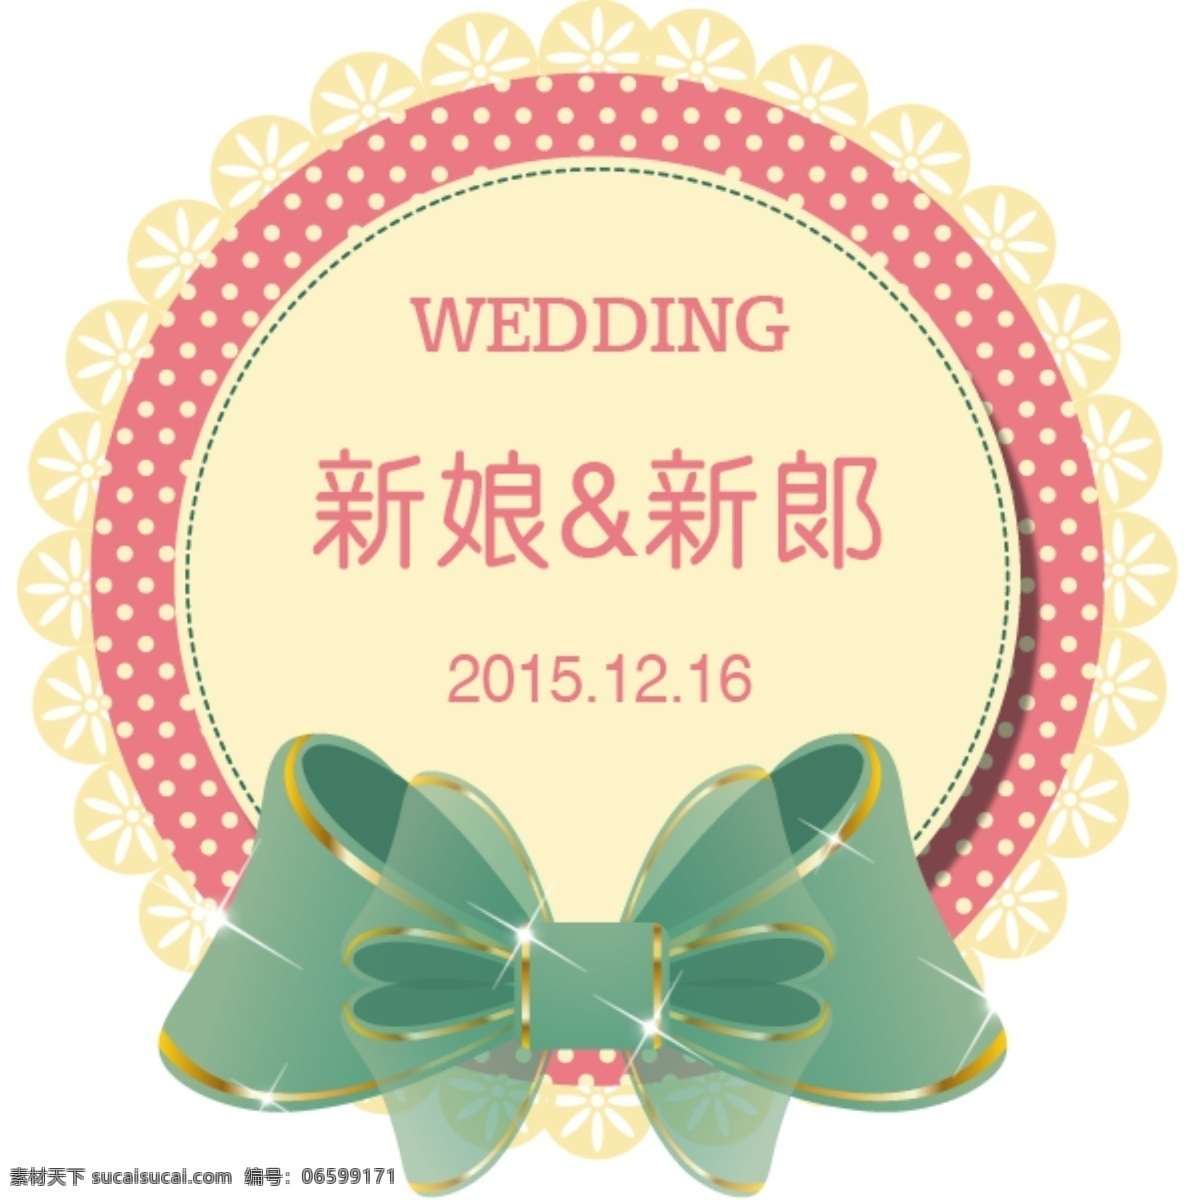 欧式 婚礼 婚庆logo 镂空花边 花纹 蝴蝶结 wedding 黃色logo 白色